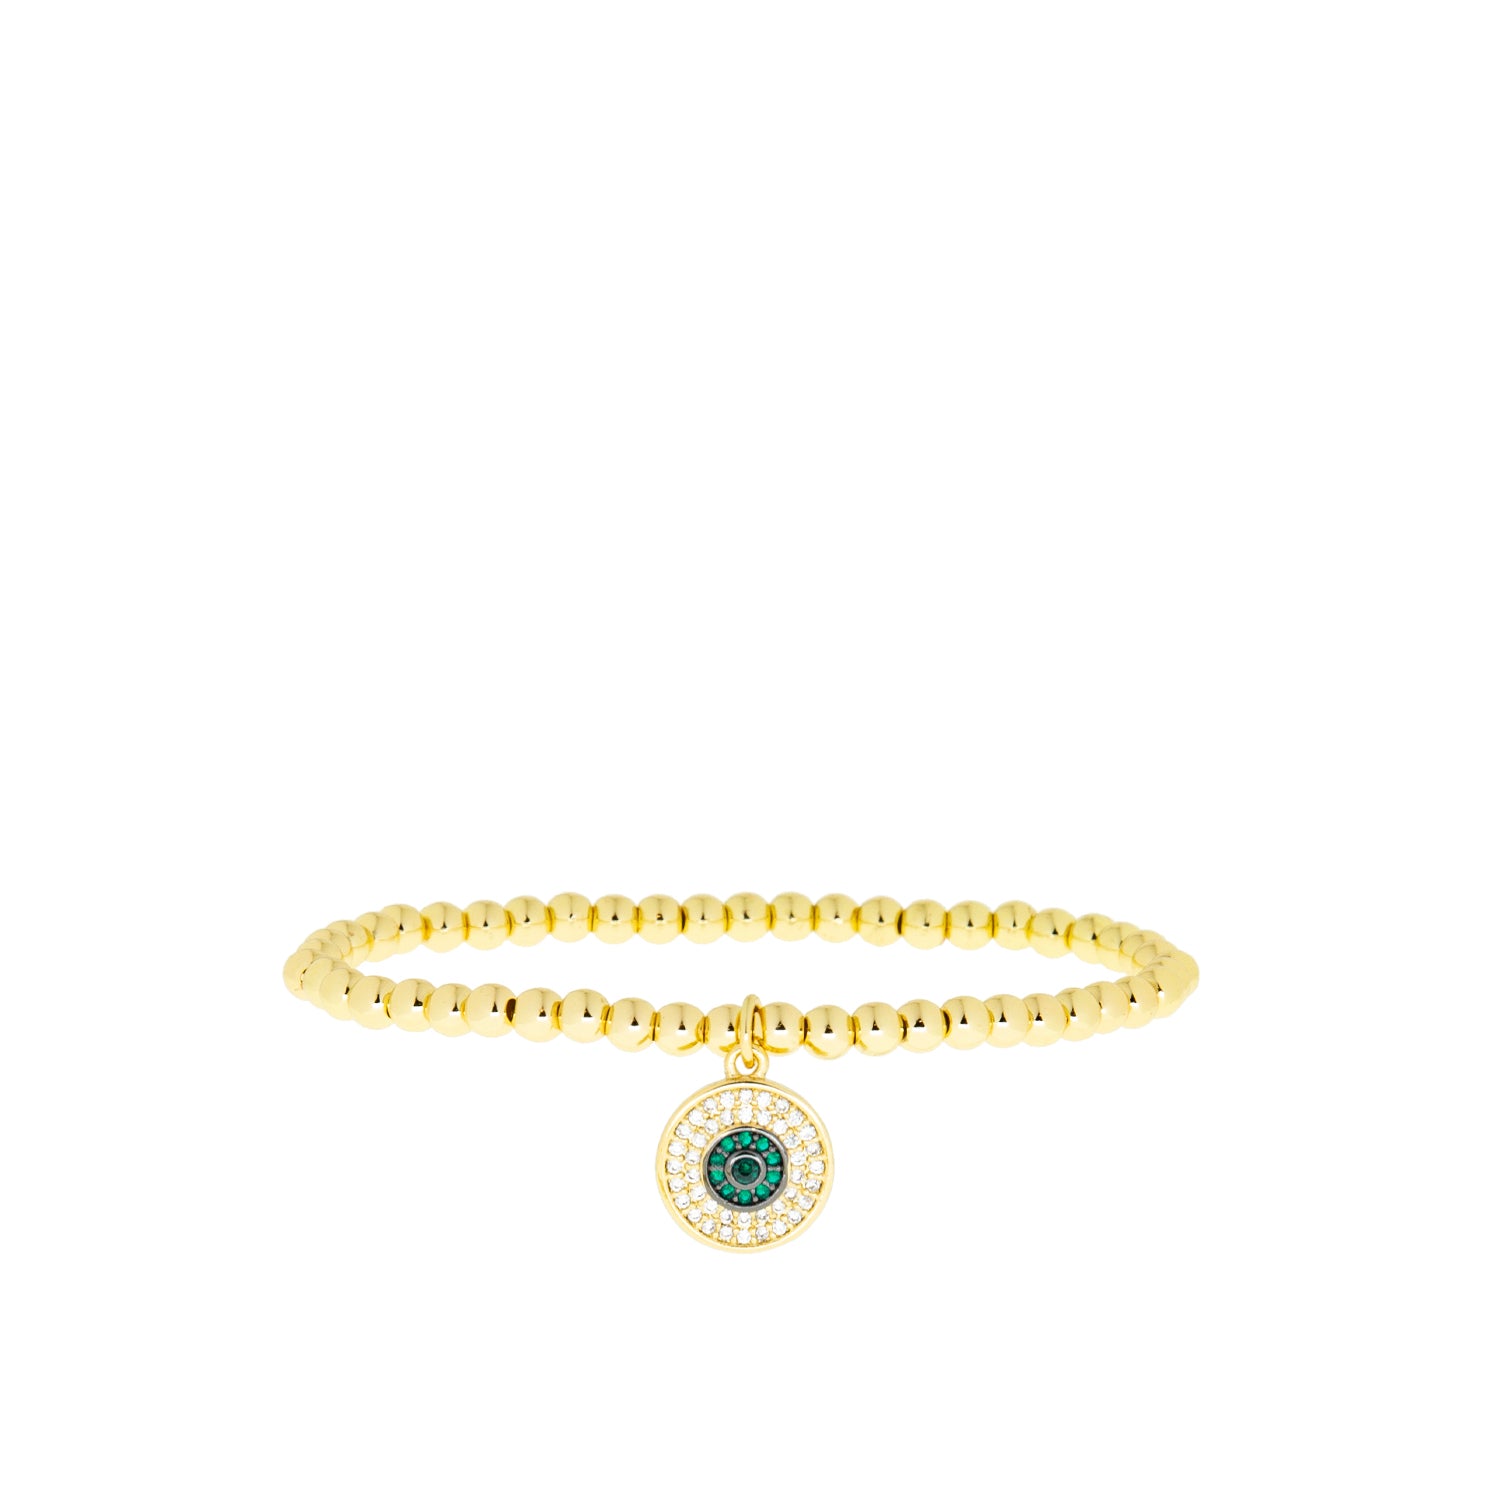 jewel tone charm stretch bracelet